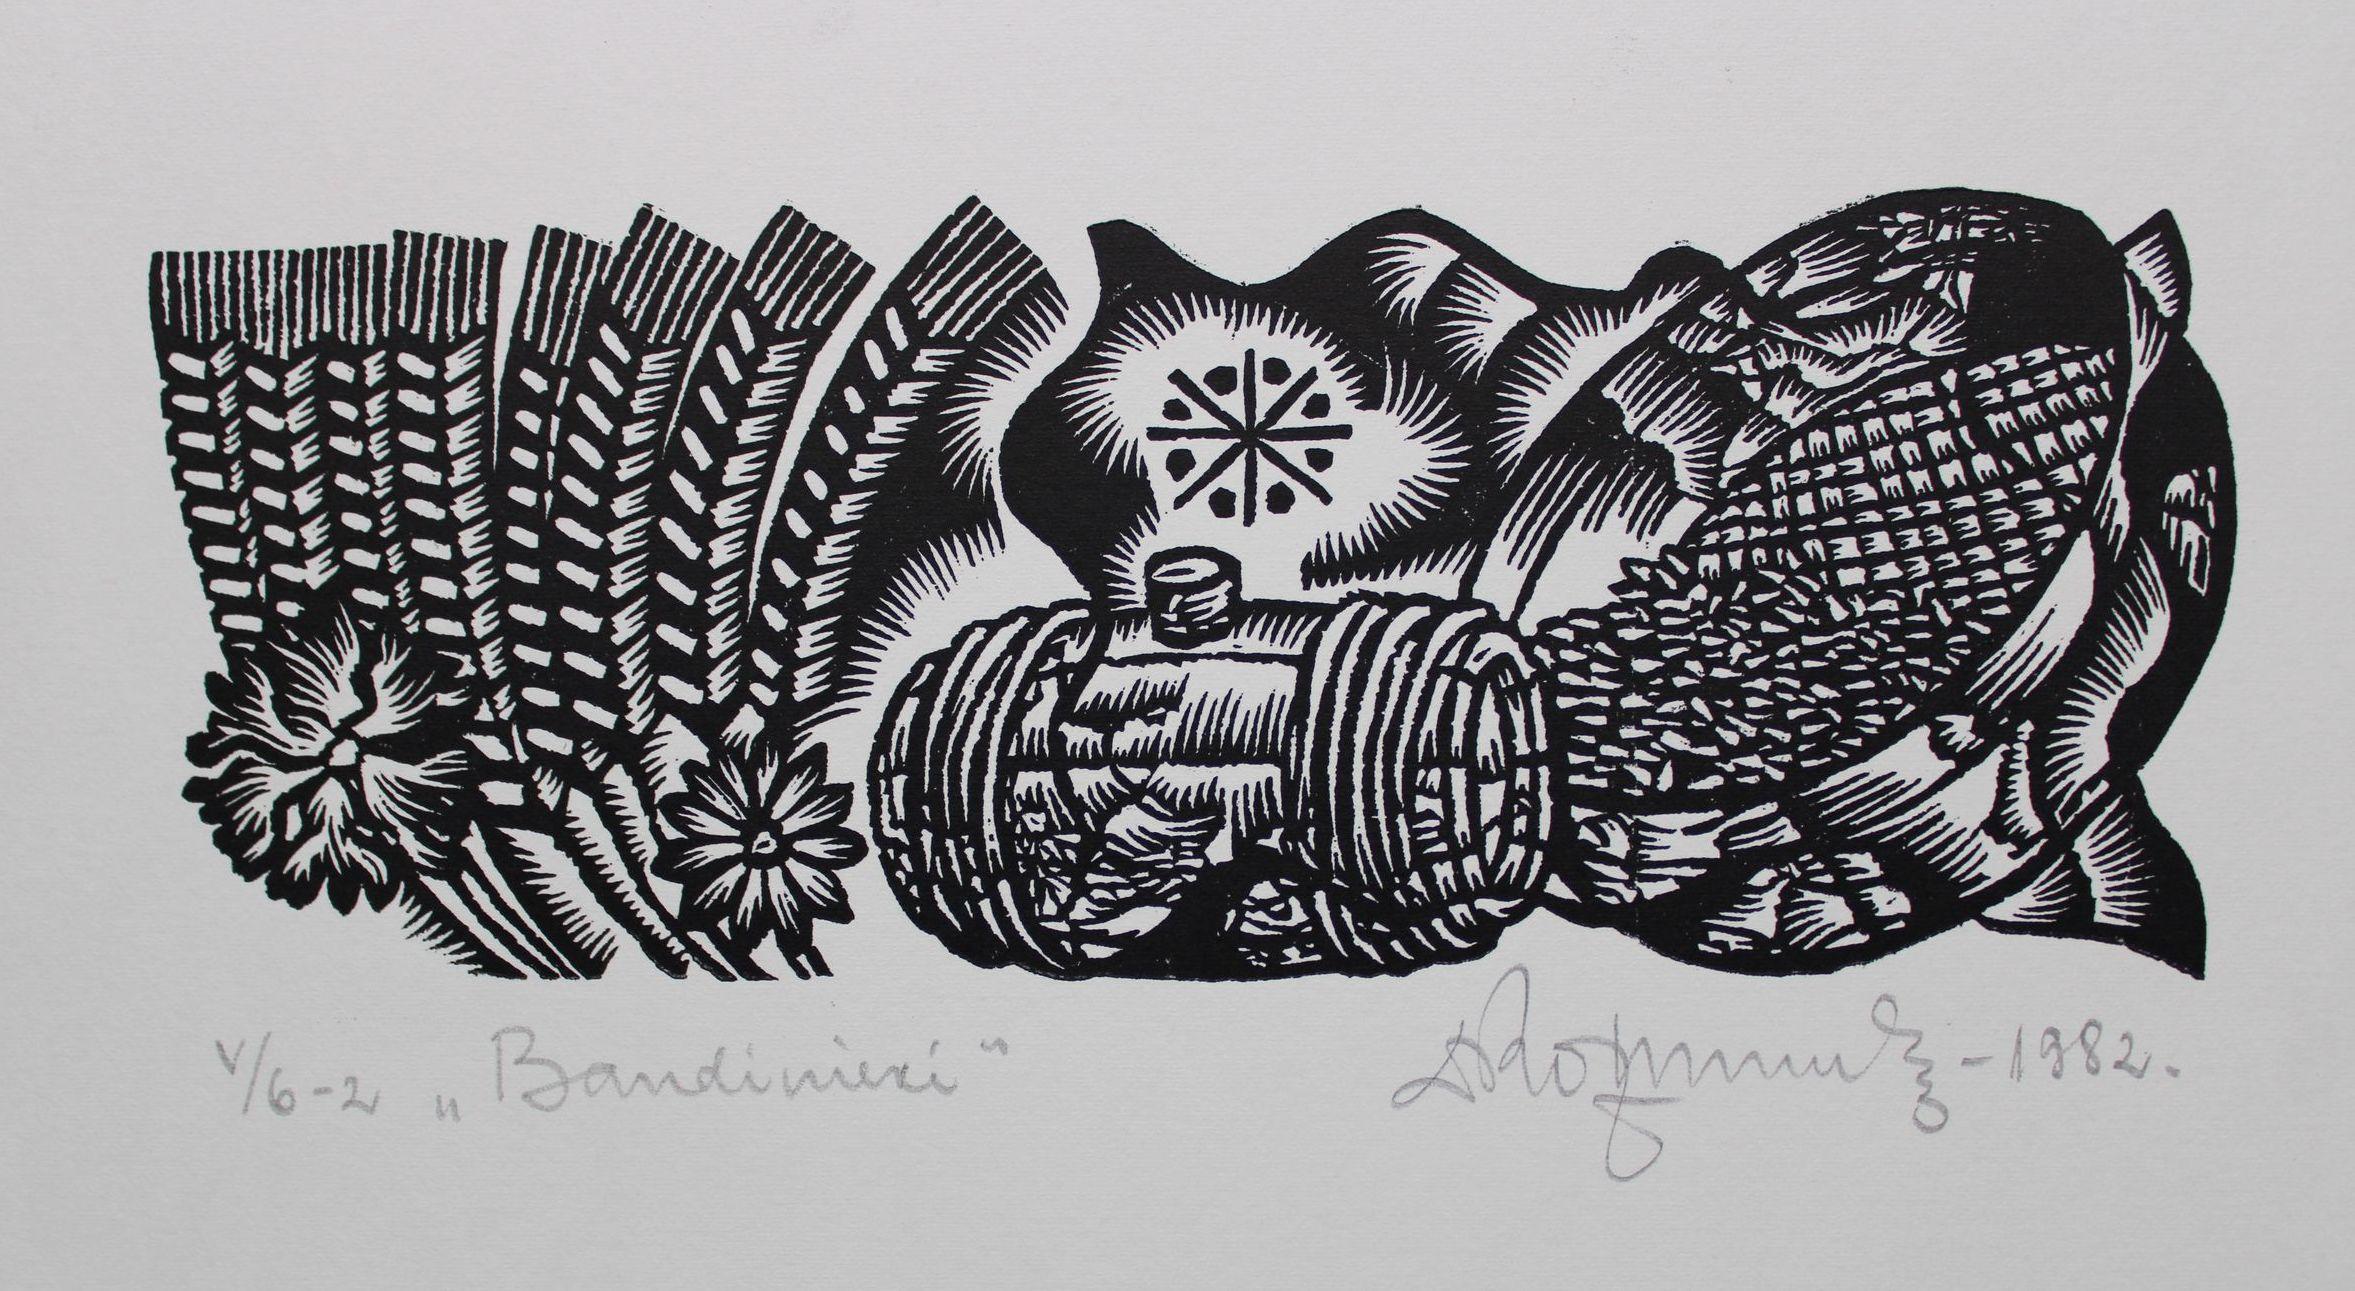 Pfänder. 1982. Papier, Linolschnitt, 20x34 cm